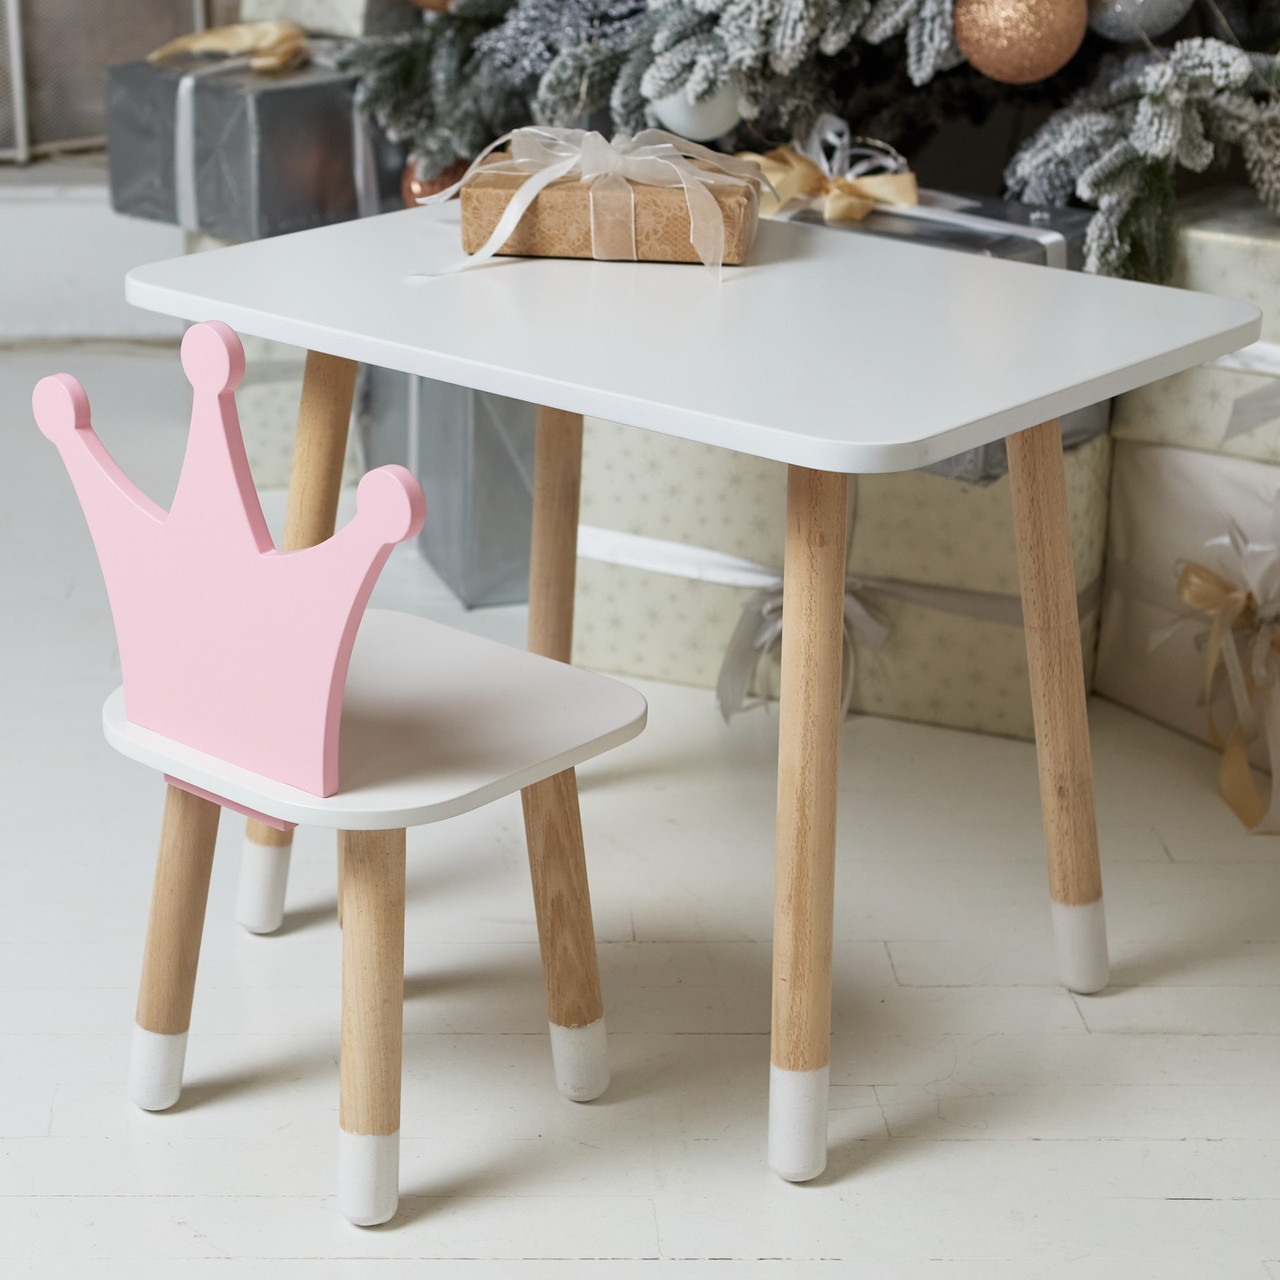 Дитячий білий прямокутний стіл і стільчик рожева корона. Столик для ігор, уроків, їжі. Білий столик, фото 1